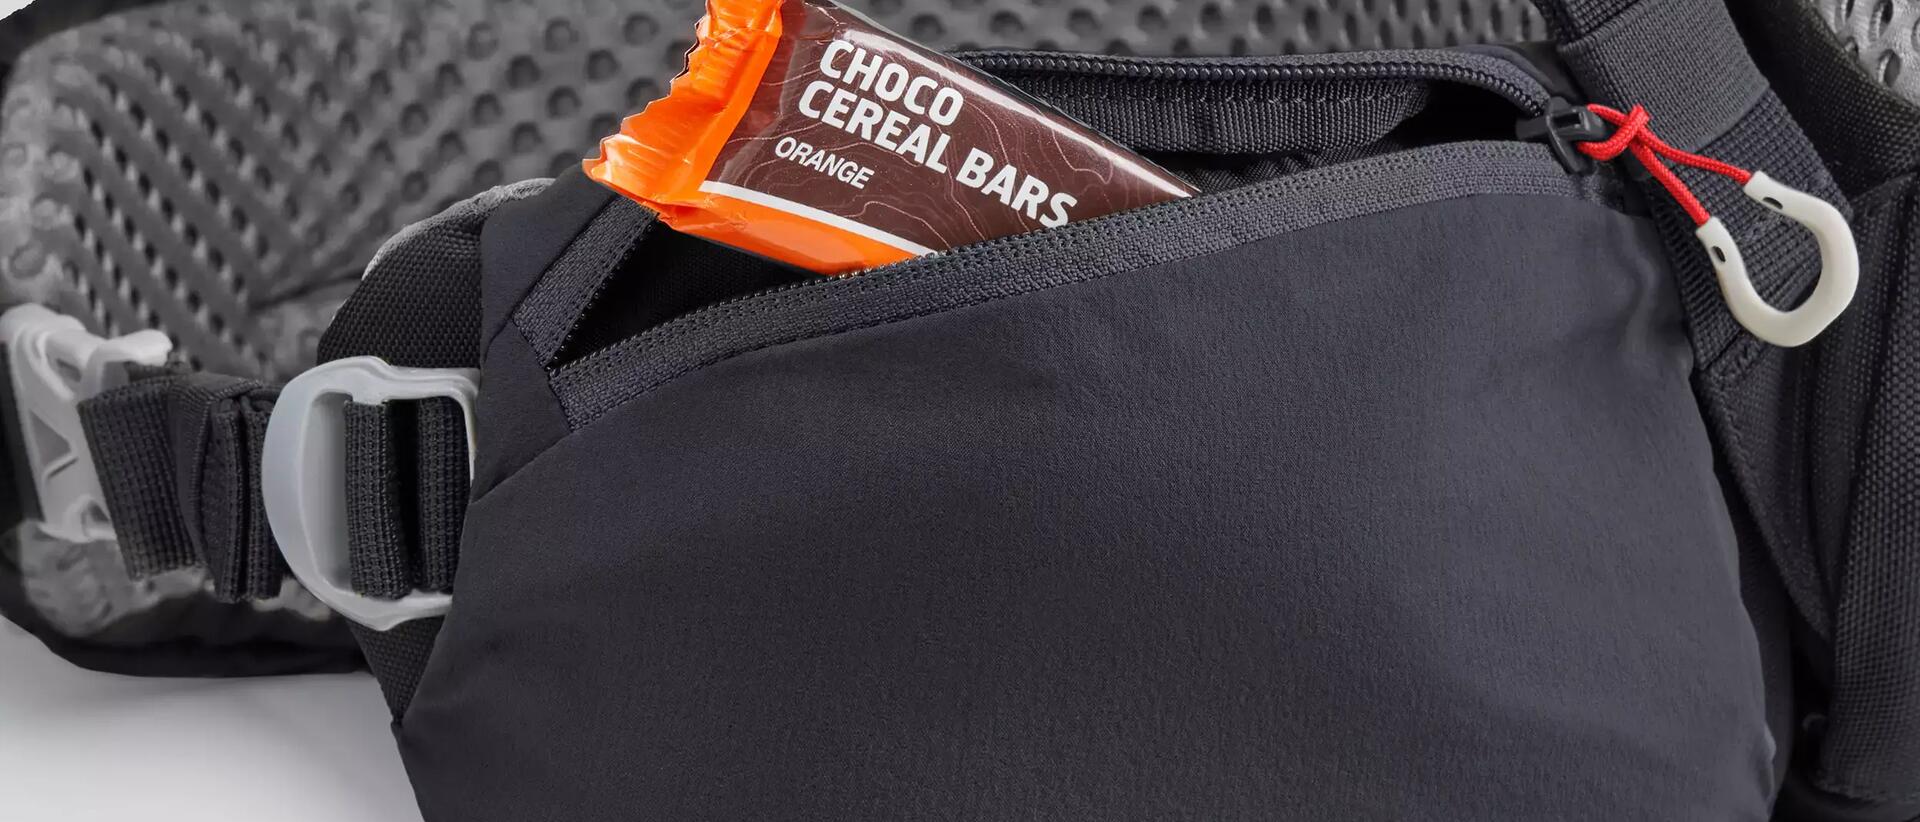 Cereal bar stored inside a rucksack's pocket